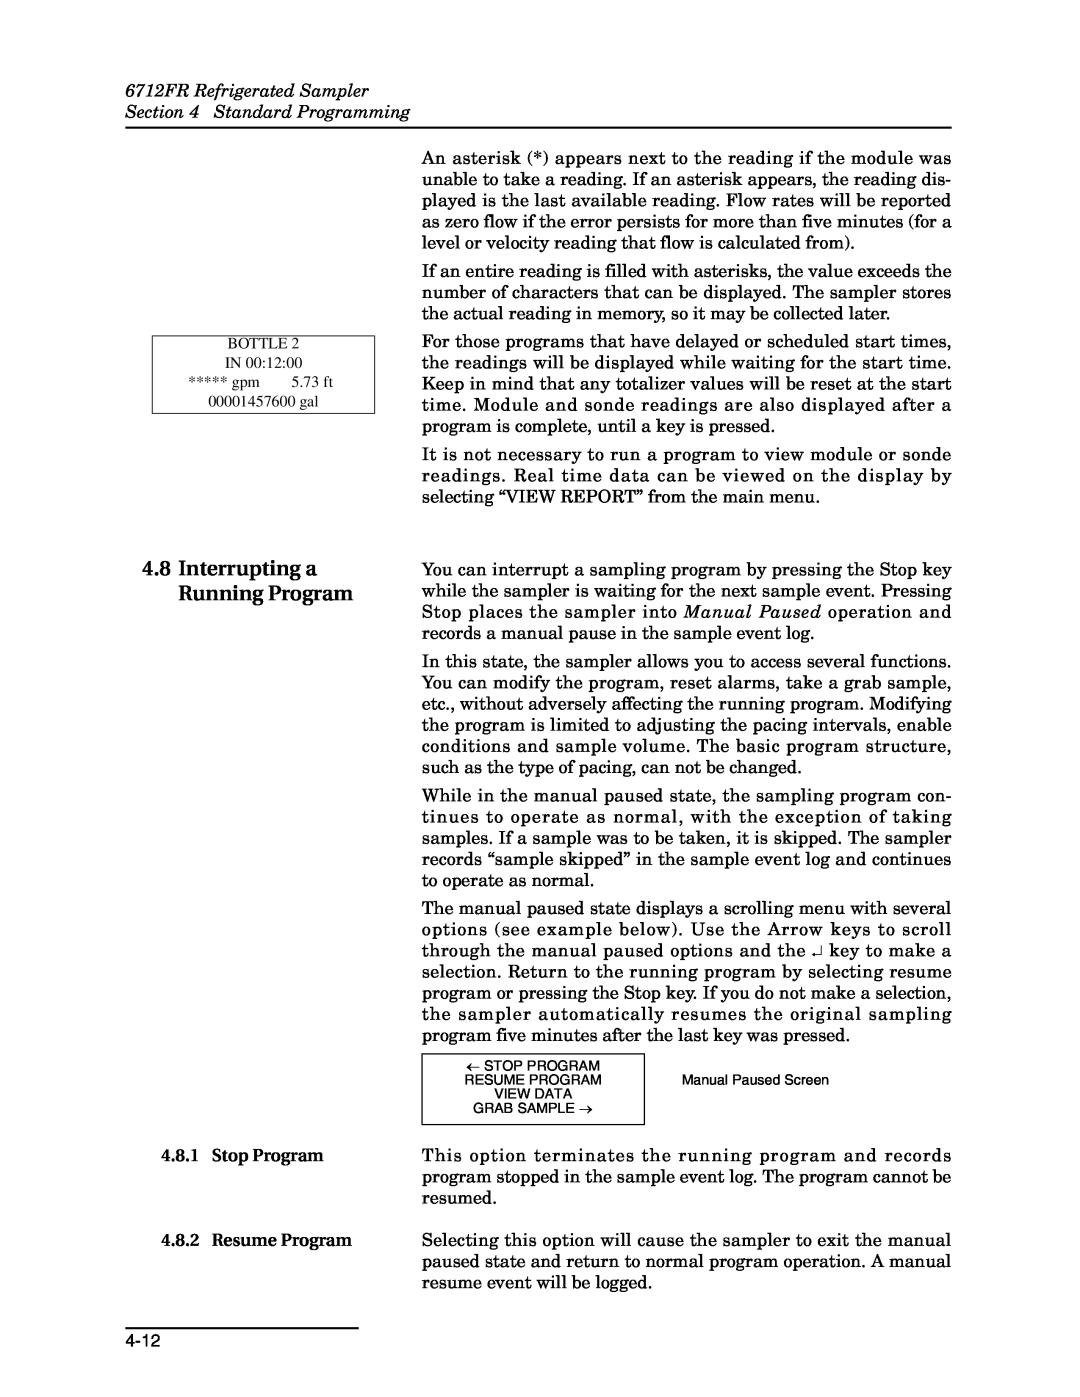 Teledyne manual Interrupting a Running Program, 6712FR Refrigerated Sampler Standard Programming 